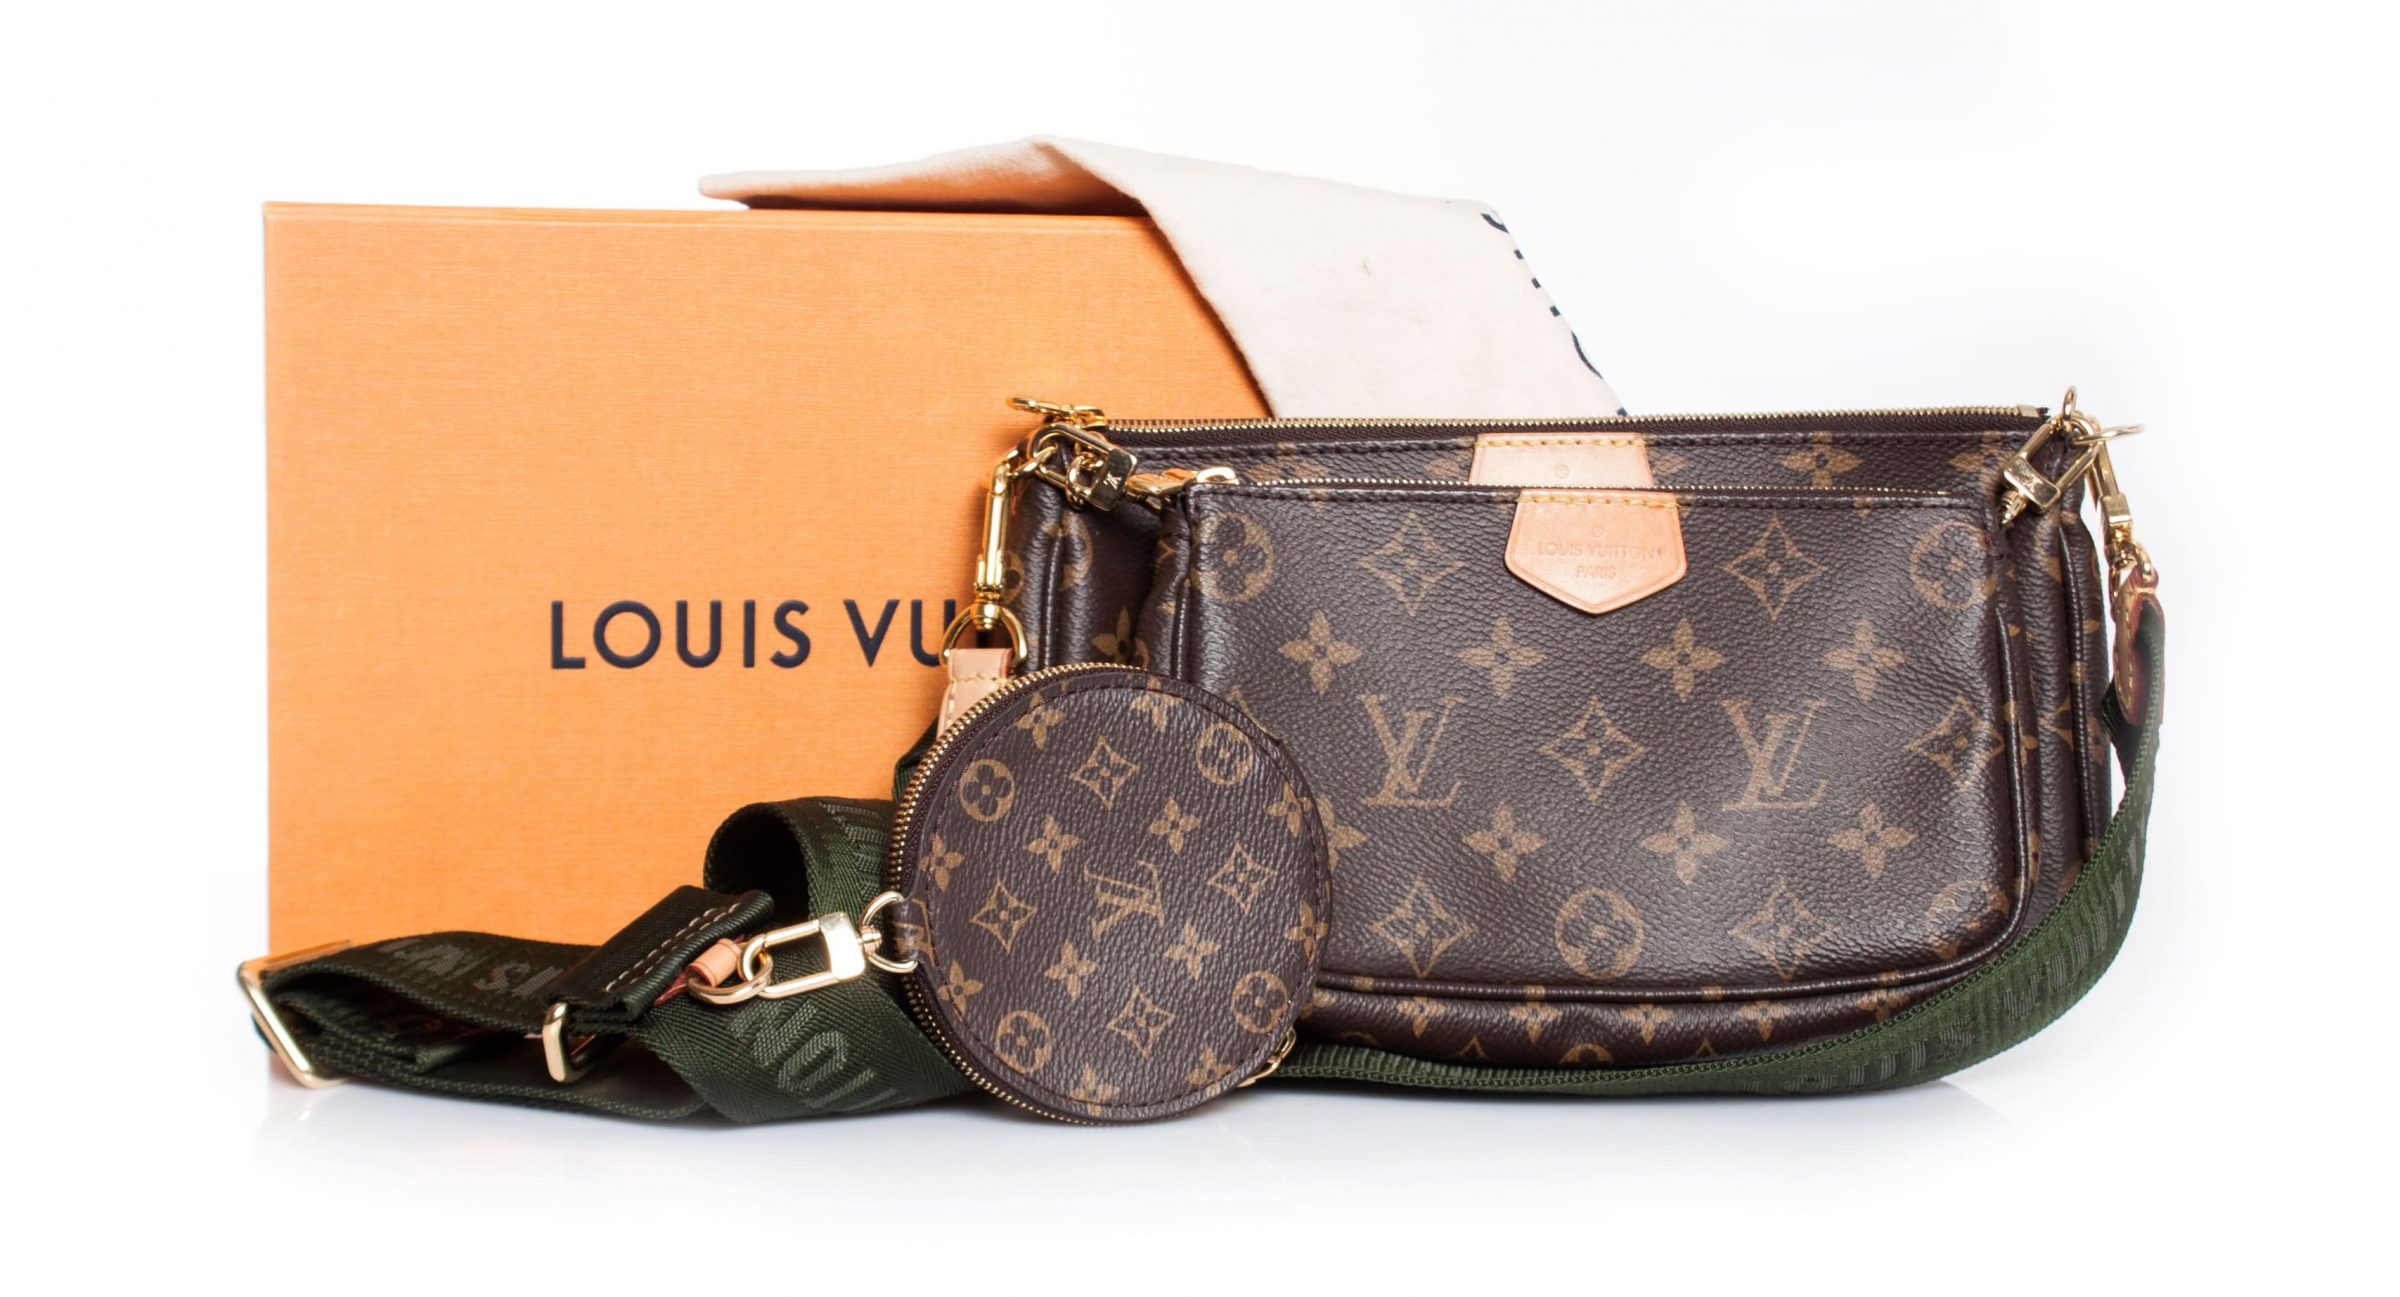 Louis Vuitton maakt parfum en handtassen wereldwijd duurder